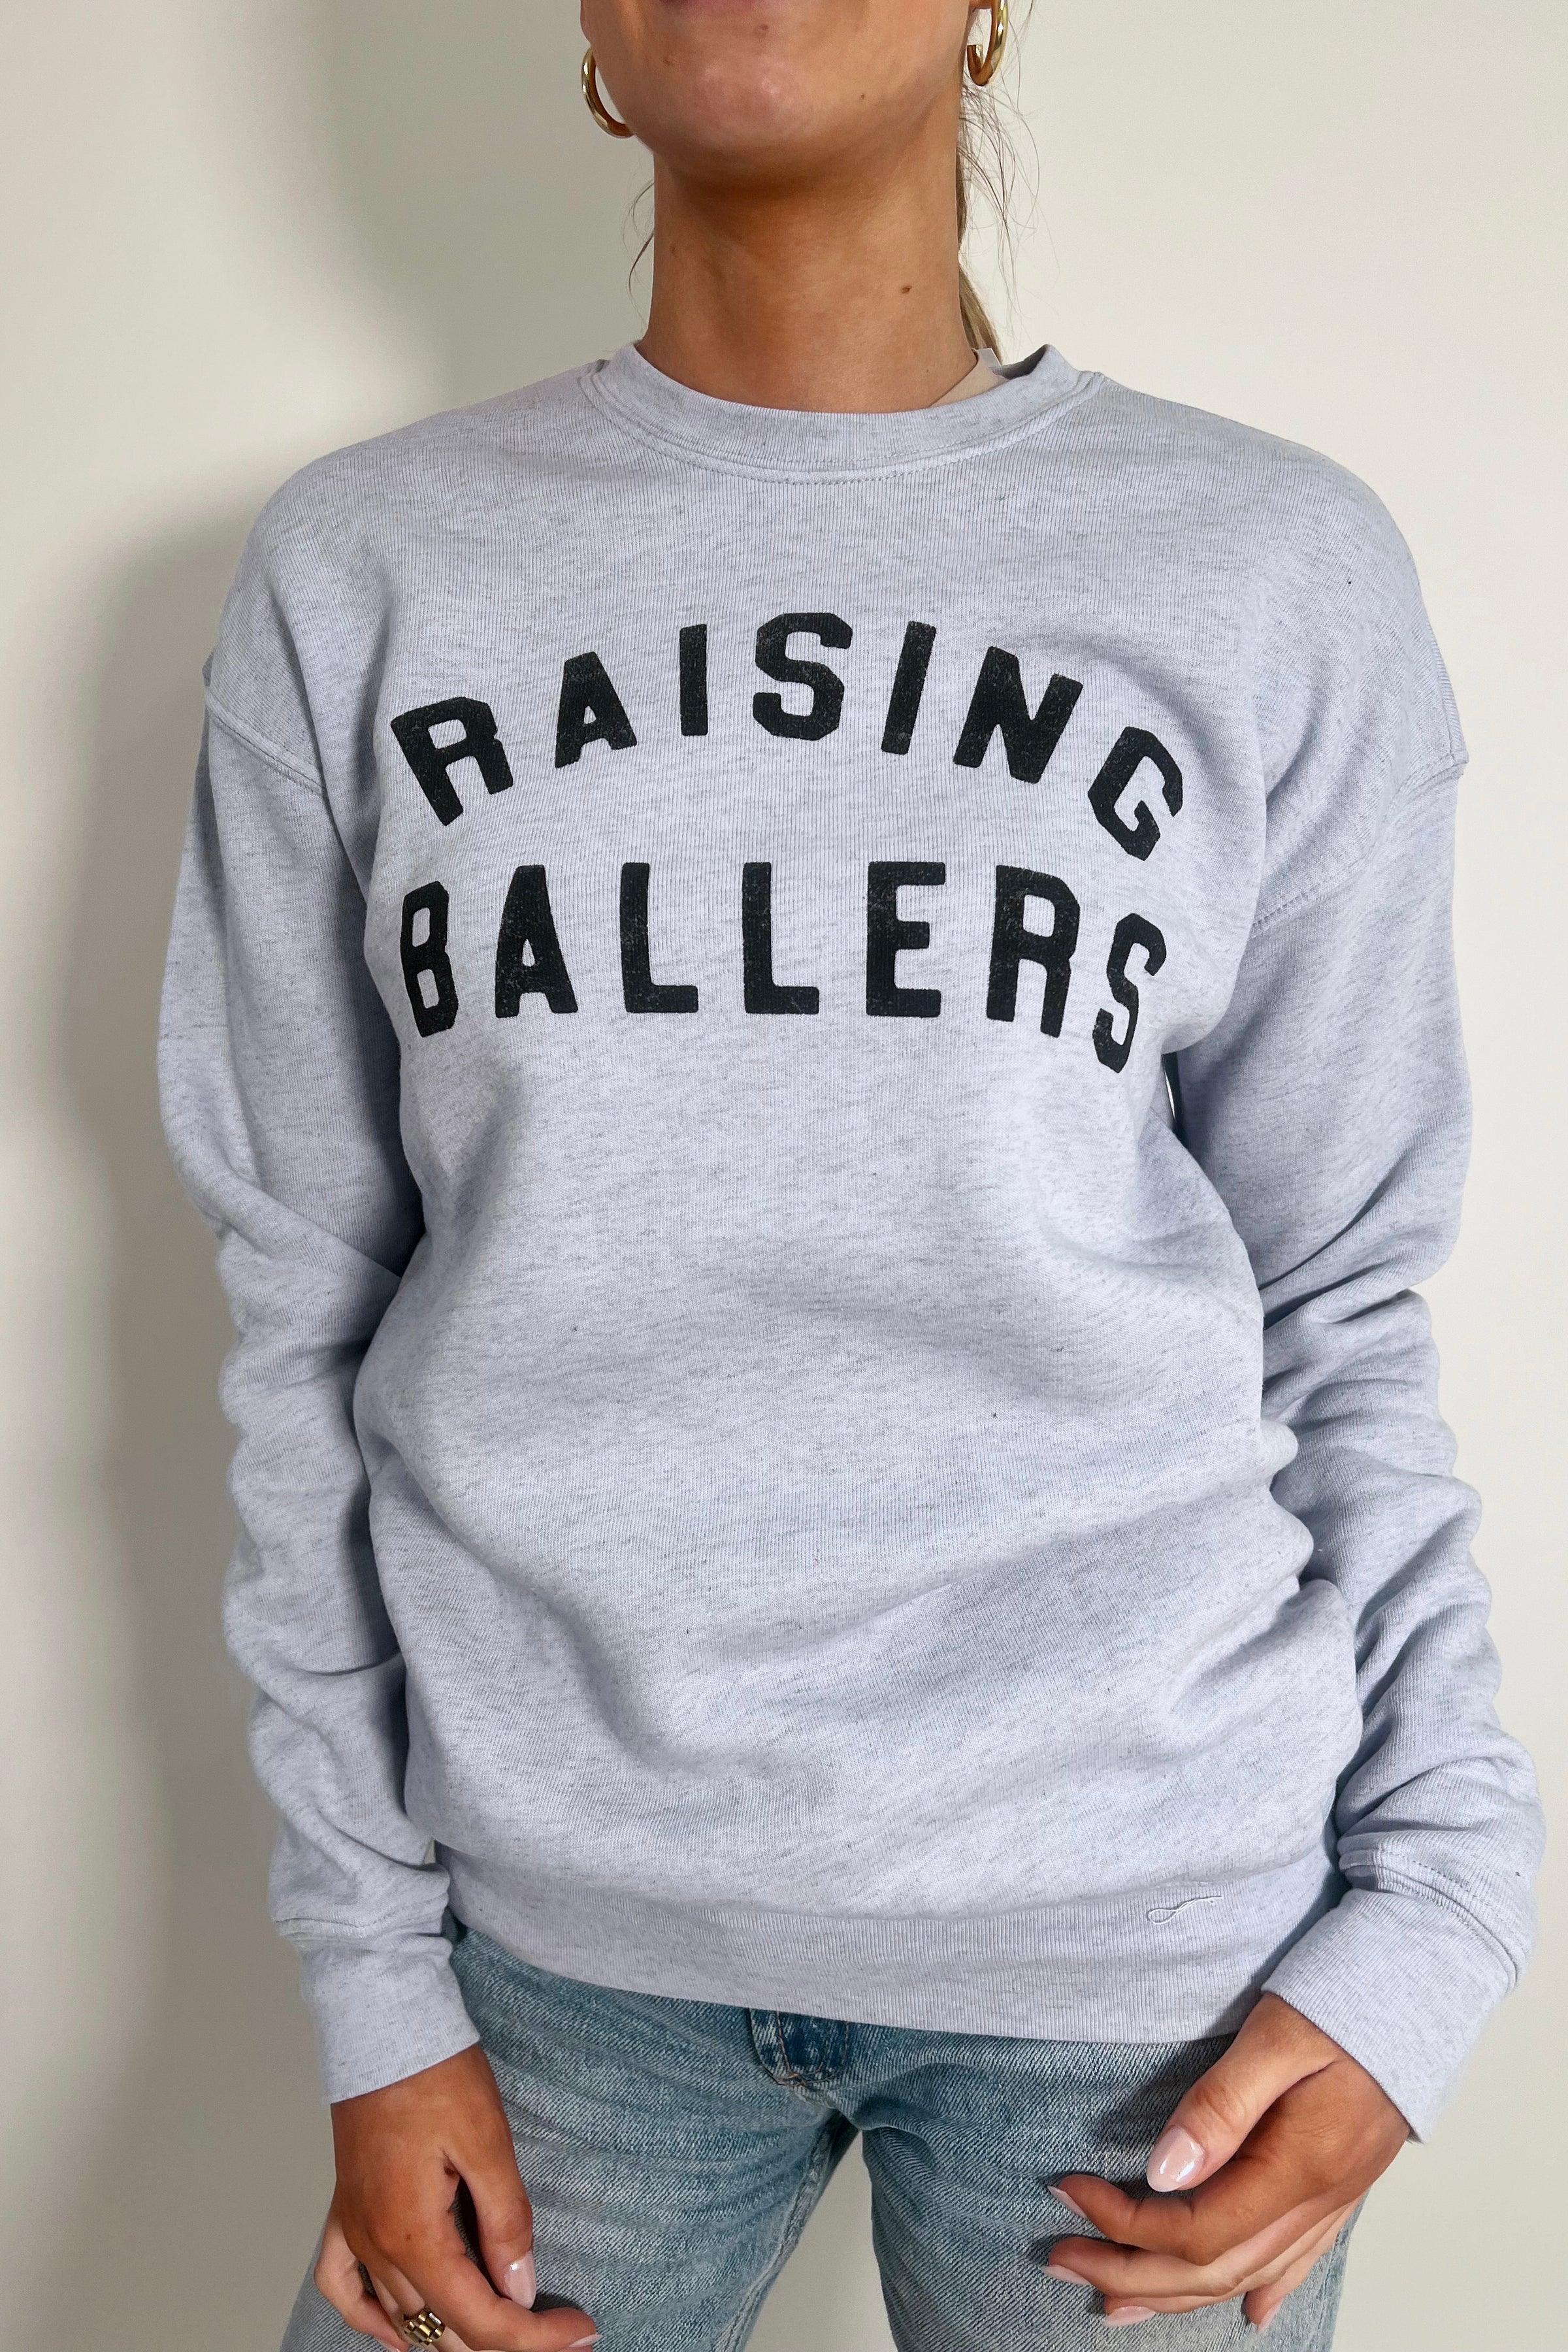 Raising Ballers Graphic Sweatshirt